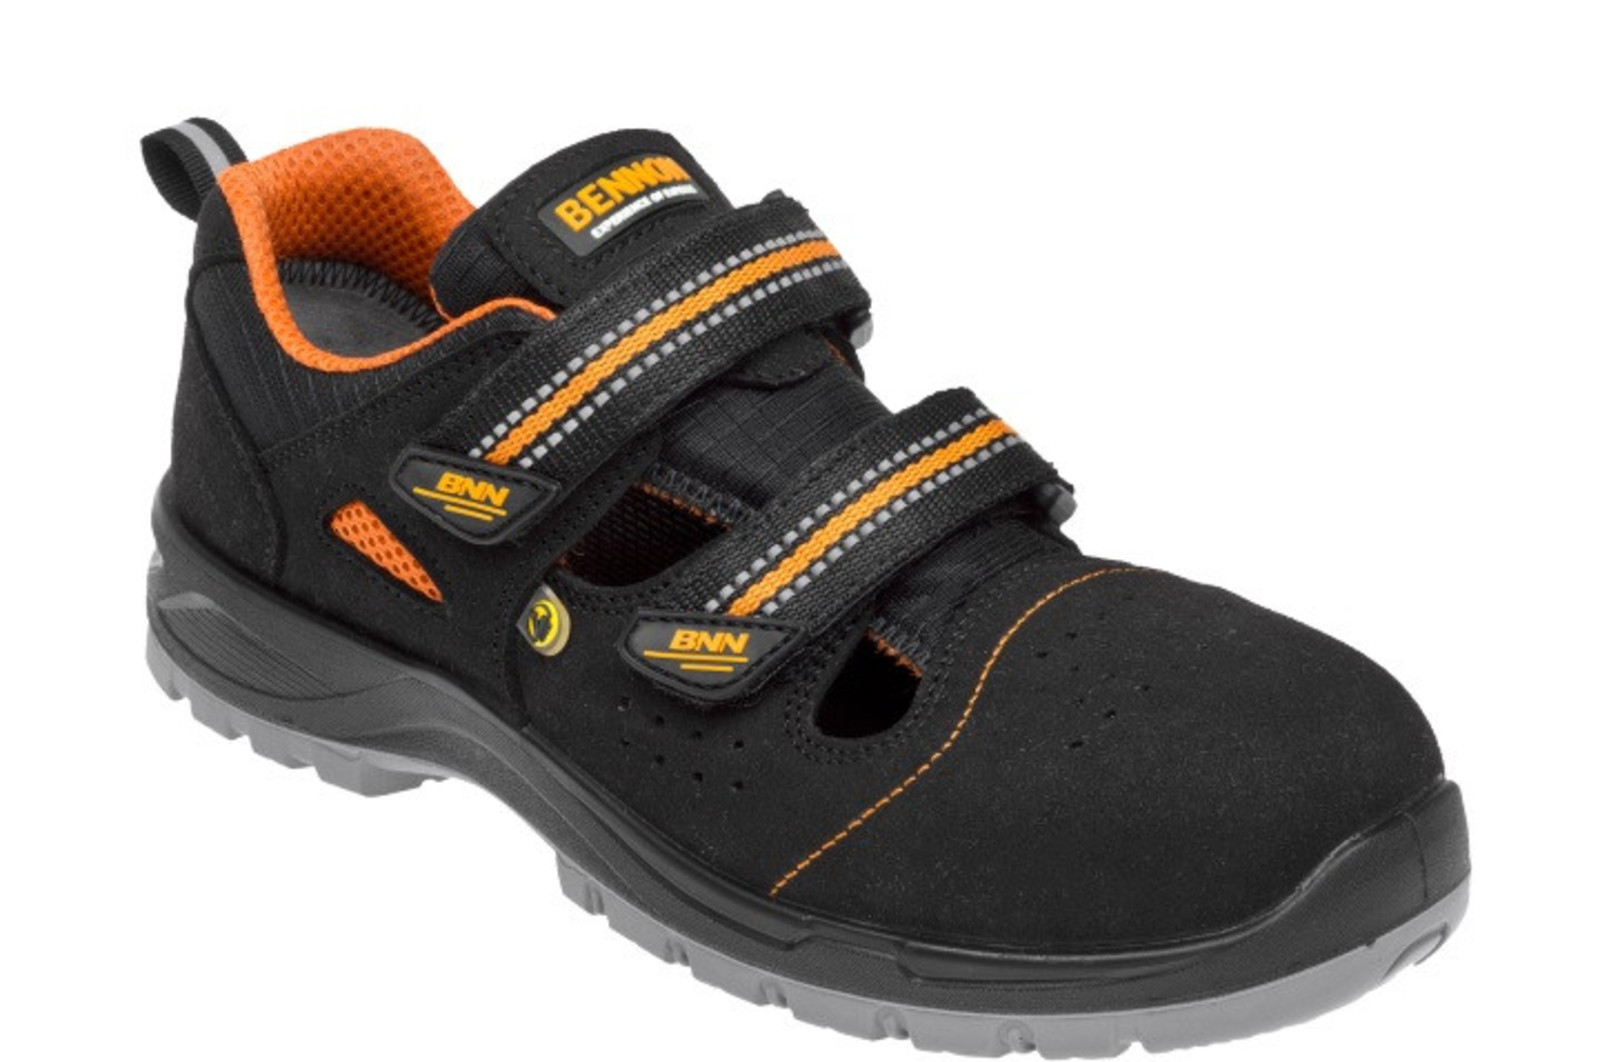 Bezpečnostné sandále Bennon Nux S1P ESD metal free - veľkosť: 38, farba: čierna